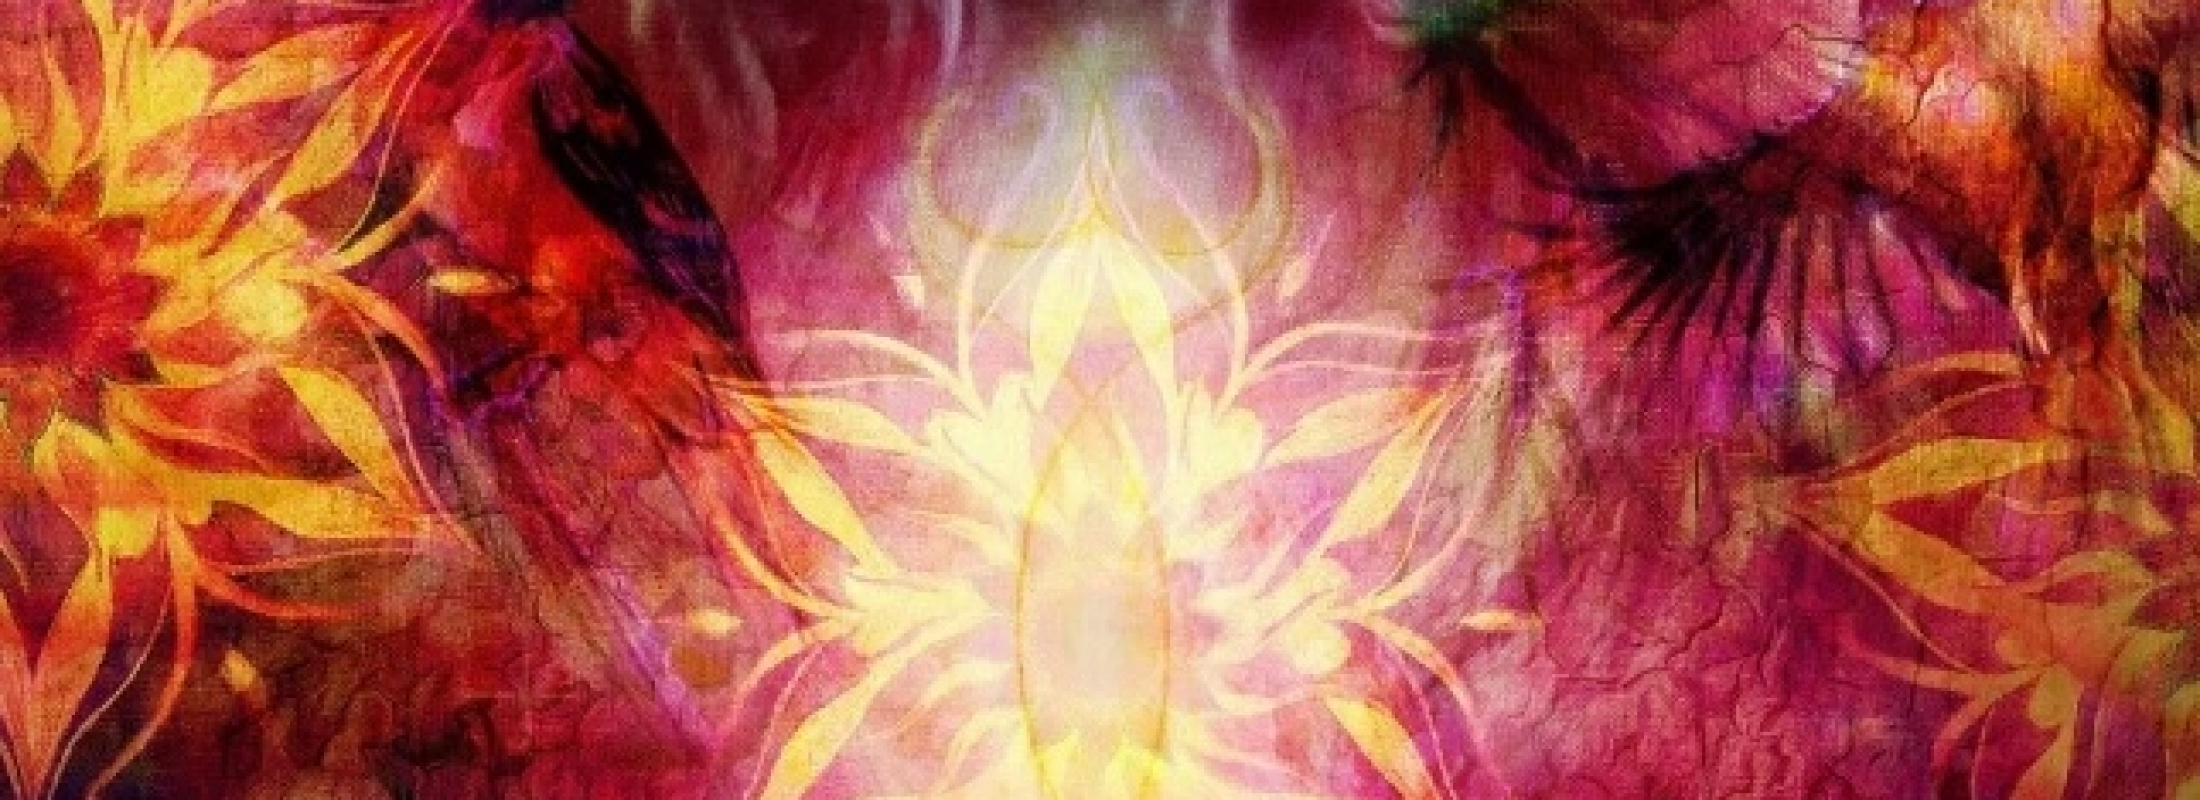 Богиня Дурга — энергетический канал жизни и уверенности (посвящение)